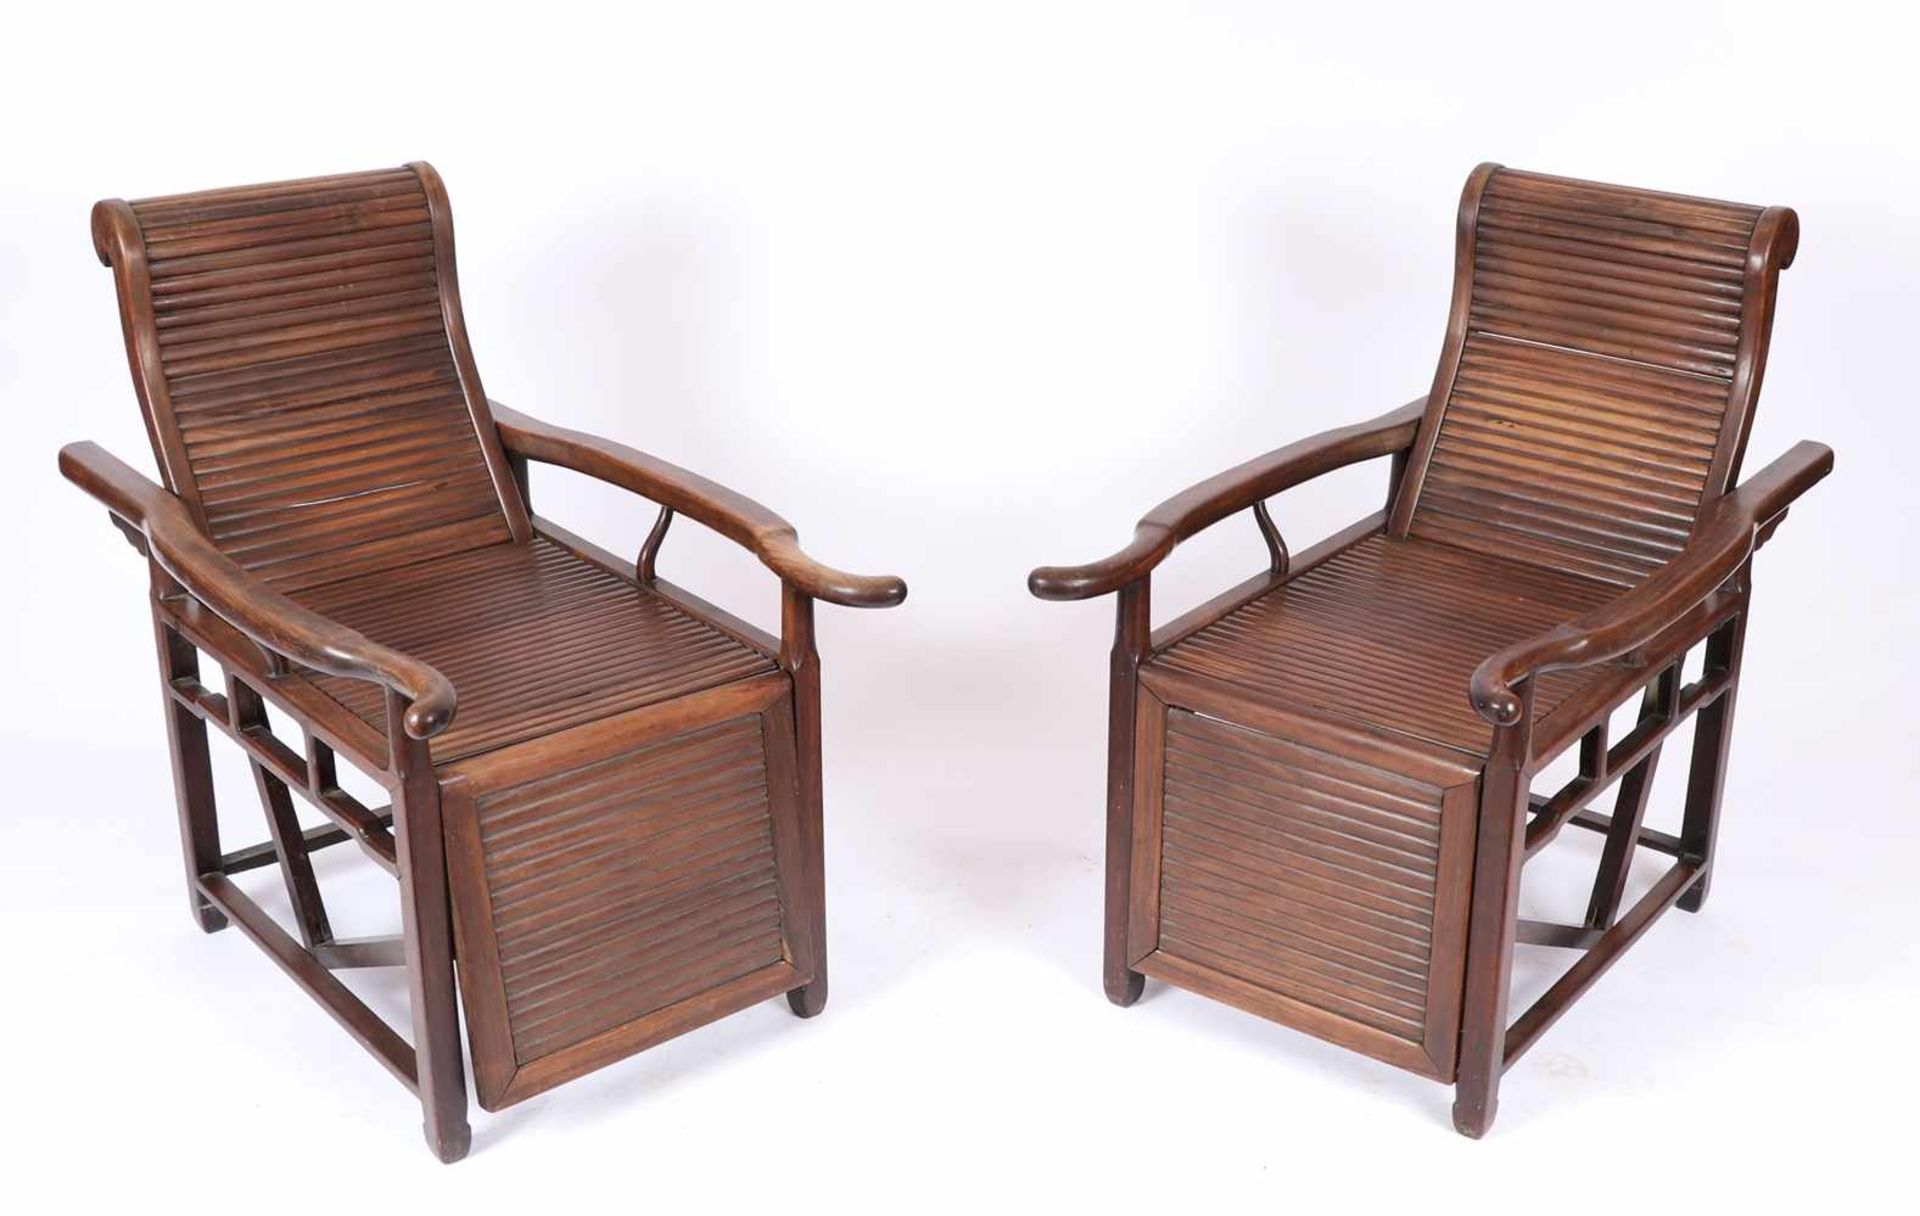 Ein Paar Liegestühle, ChinaWohl um 1920, aus schwerem Hartholz. Armlehnsessel mit automatischer - Bild 2 aus 2